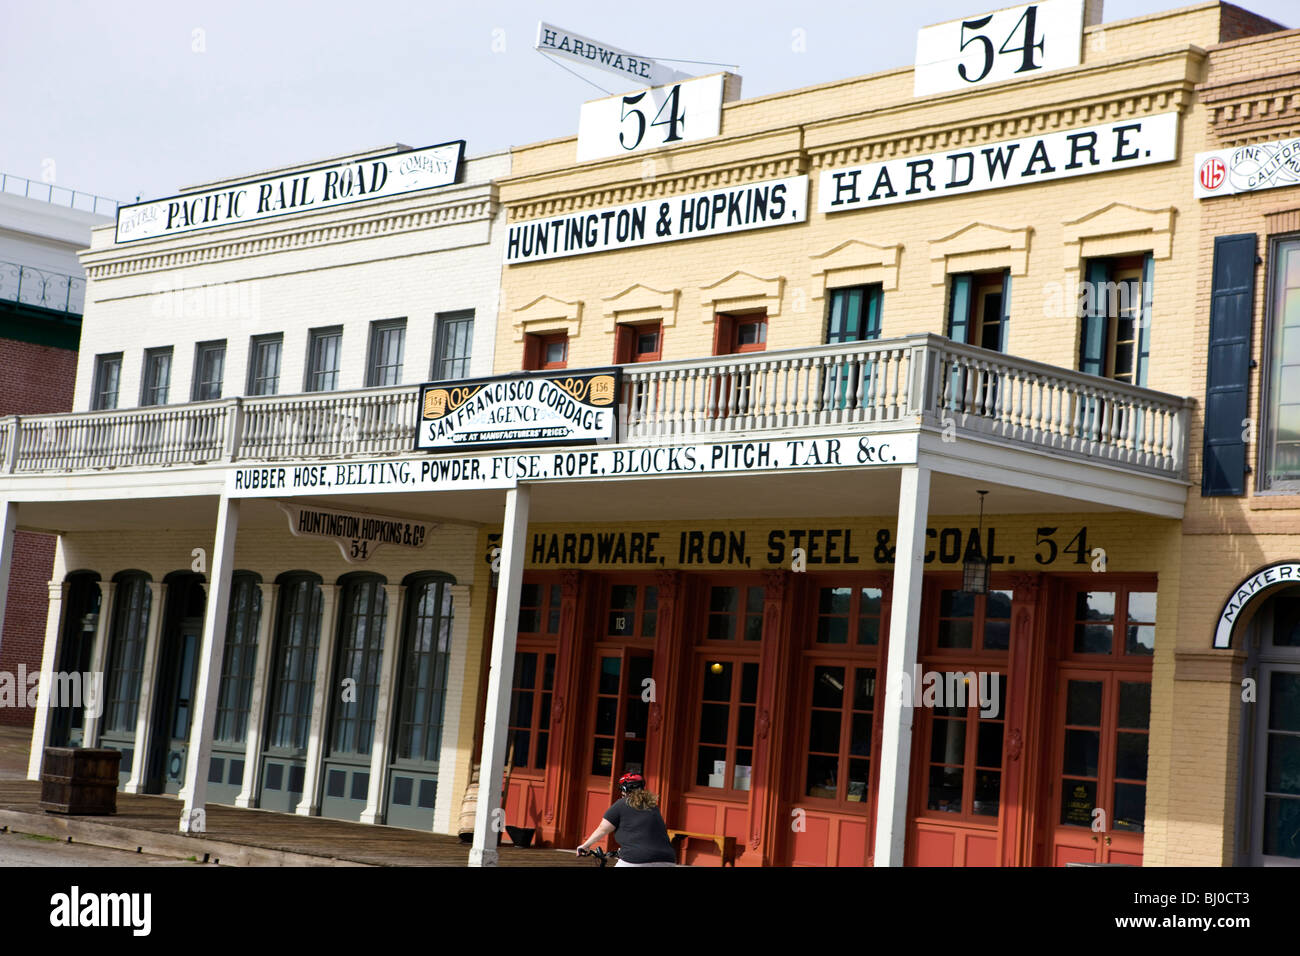 Huntington & Hopkins Hardware und Pacific Rail Road Ladenfronten, Old Sacramento, California, Vereinigte Staaten von Amerika Stockfoto